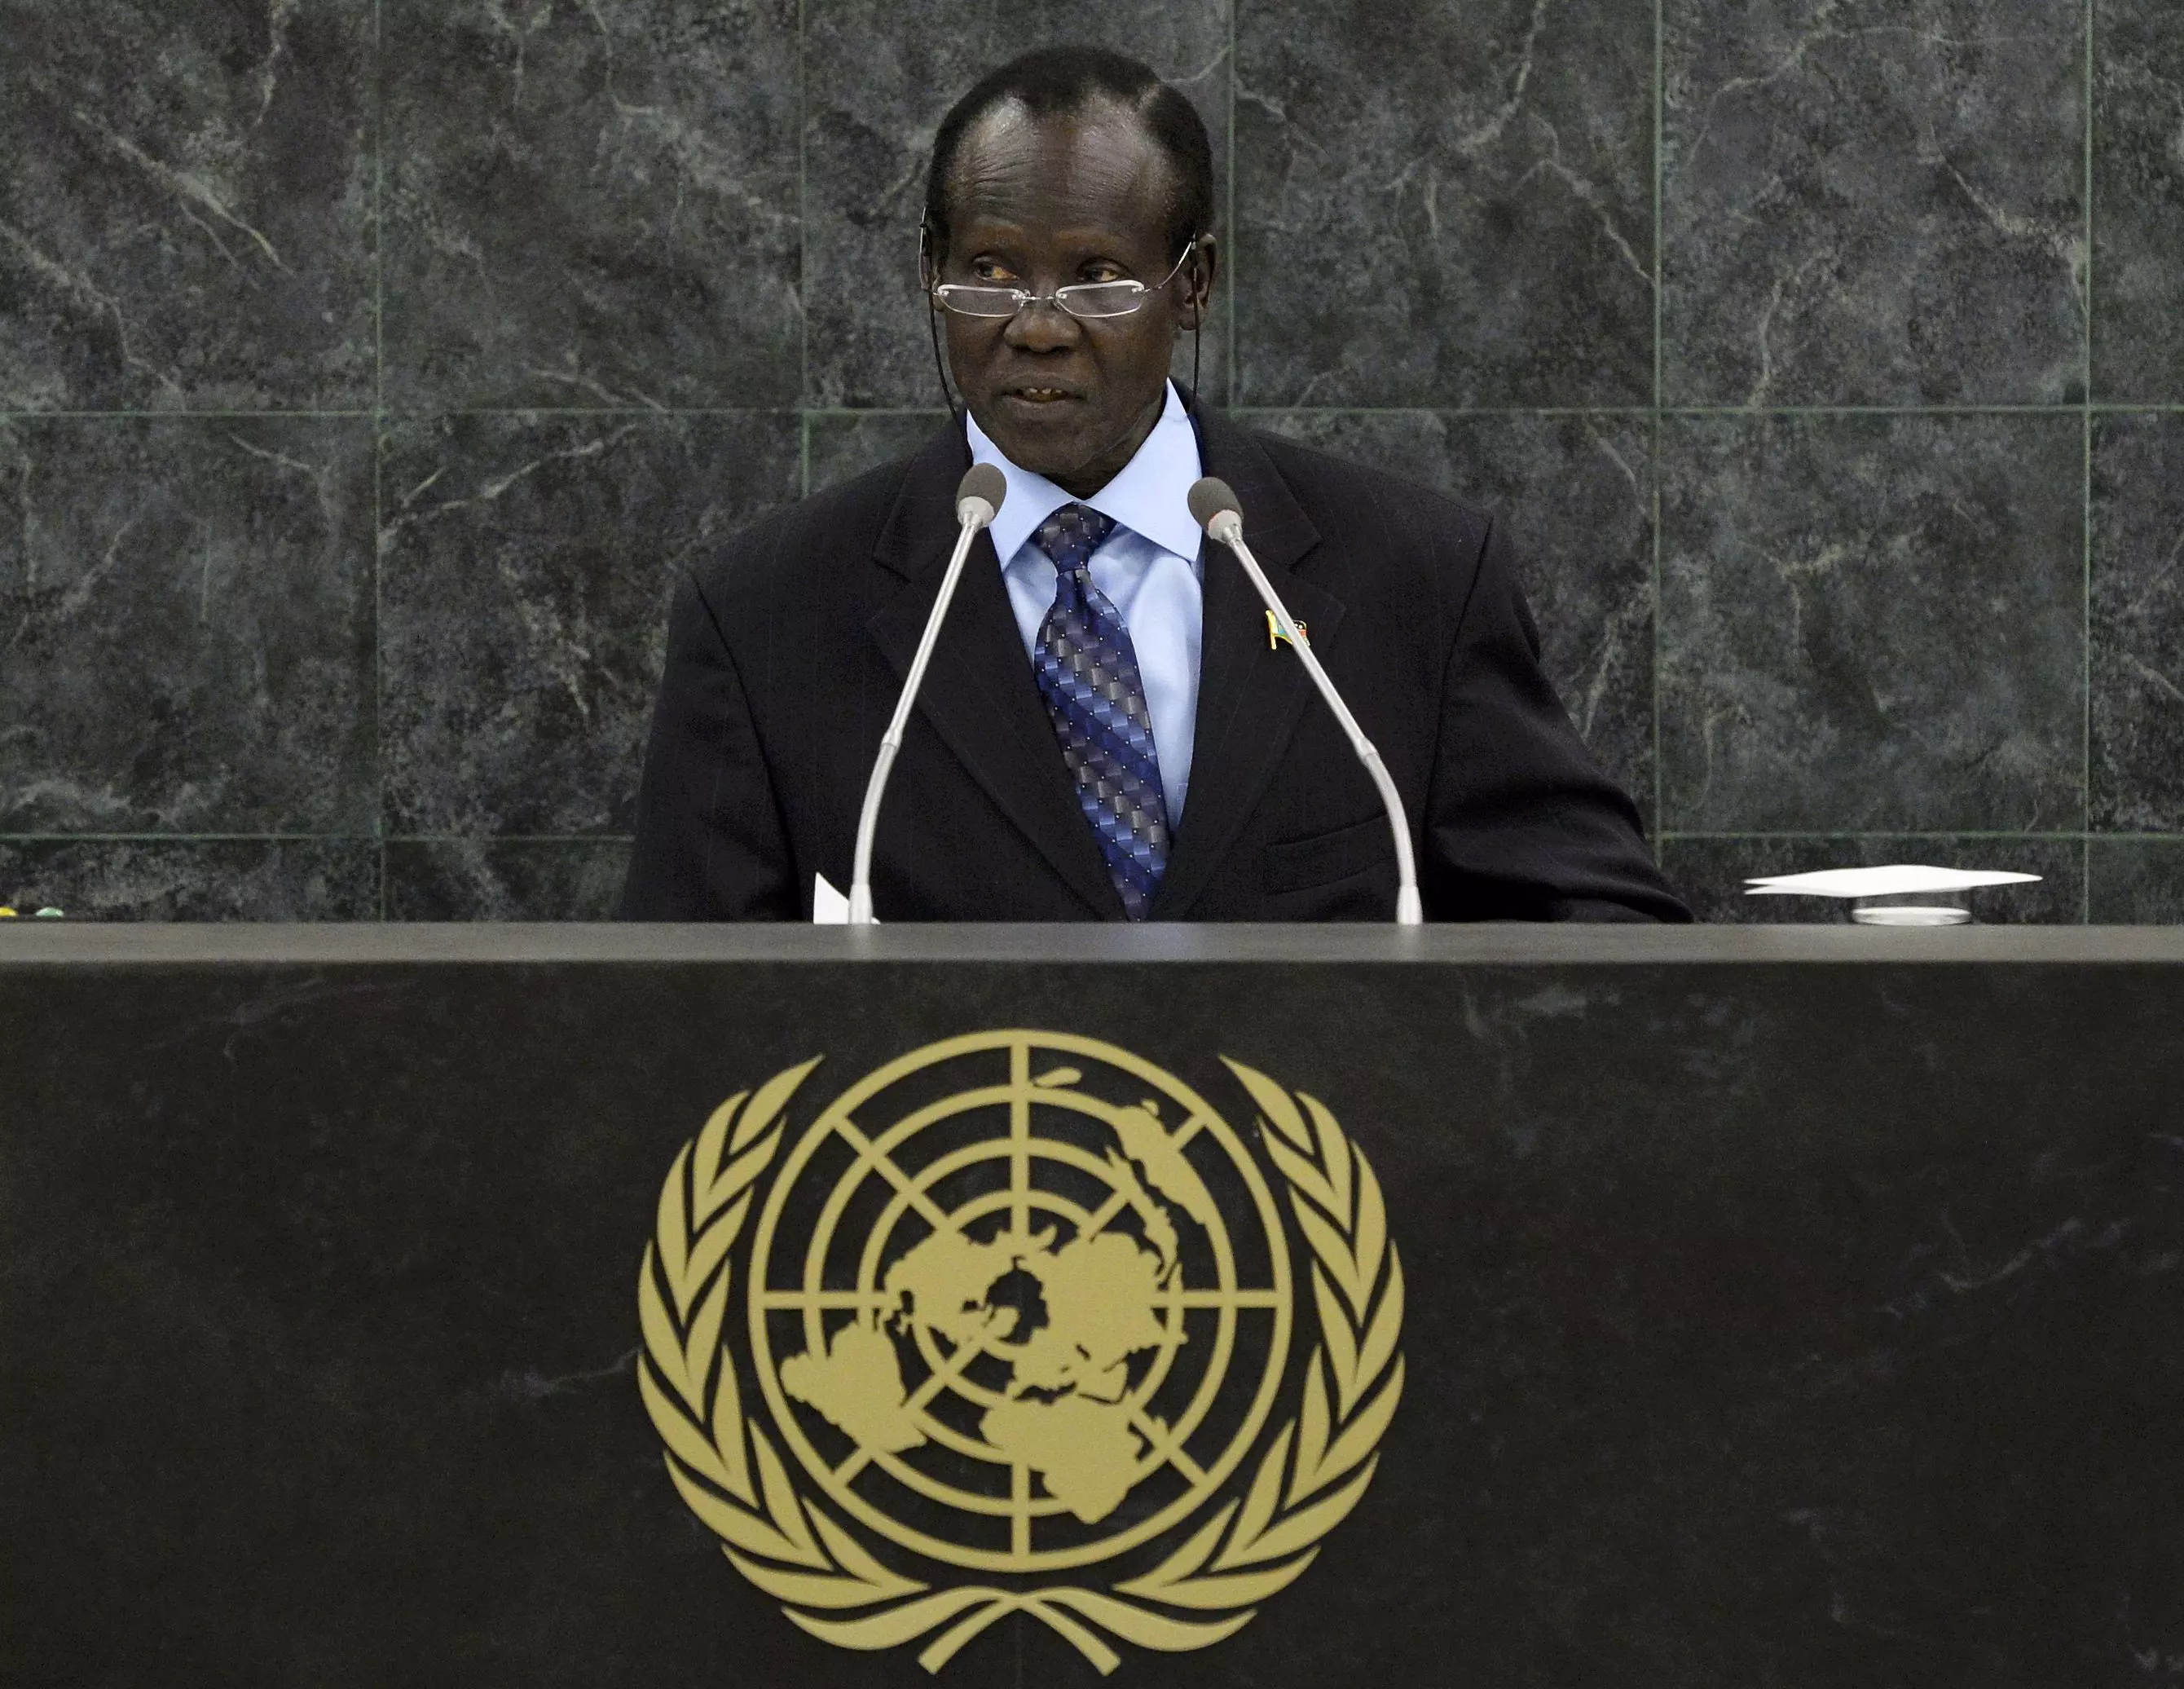 אמנסטי אינטרנשיונל: "סודאן חייבת לשים קץ לדיכוי האלים". סגן נשיא סודאן נואם אתמול בעצרת האו"ם